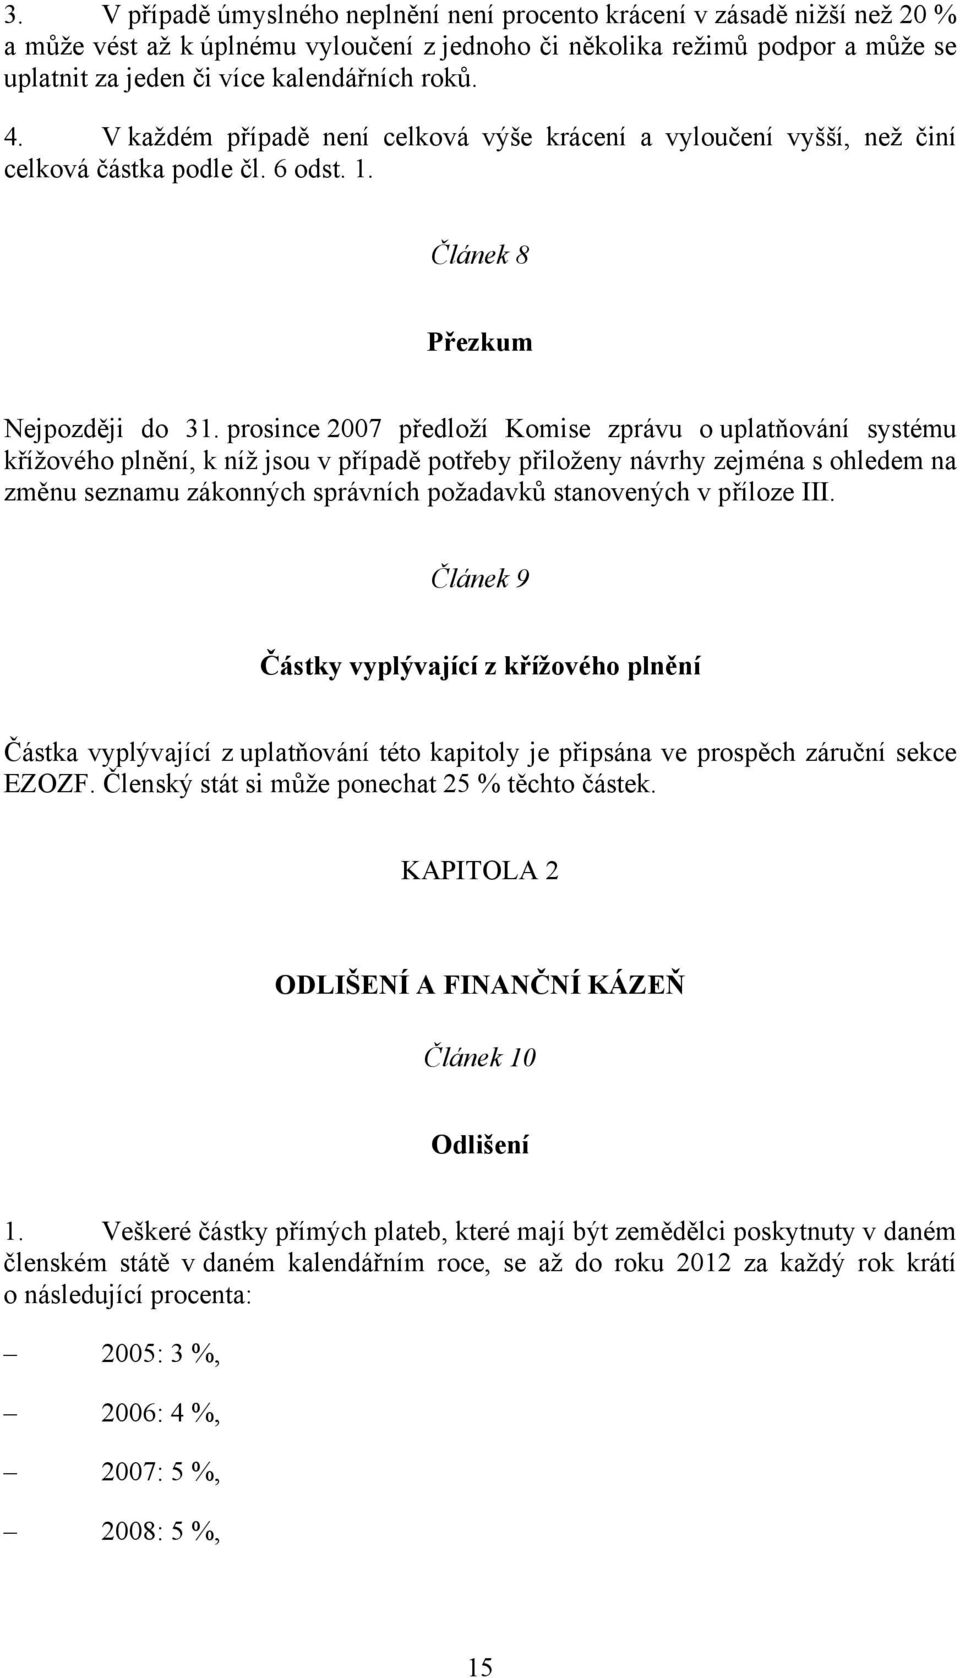 prosince 2007 předloží Komise zprávu o uplatňování systému křížového plnění, k níž jsou v případě potřeby přiloženy návrhy zejména s ohledem na změnu seznamu zákonných správních požadavků stanovených